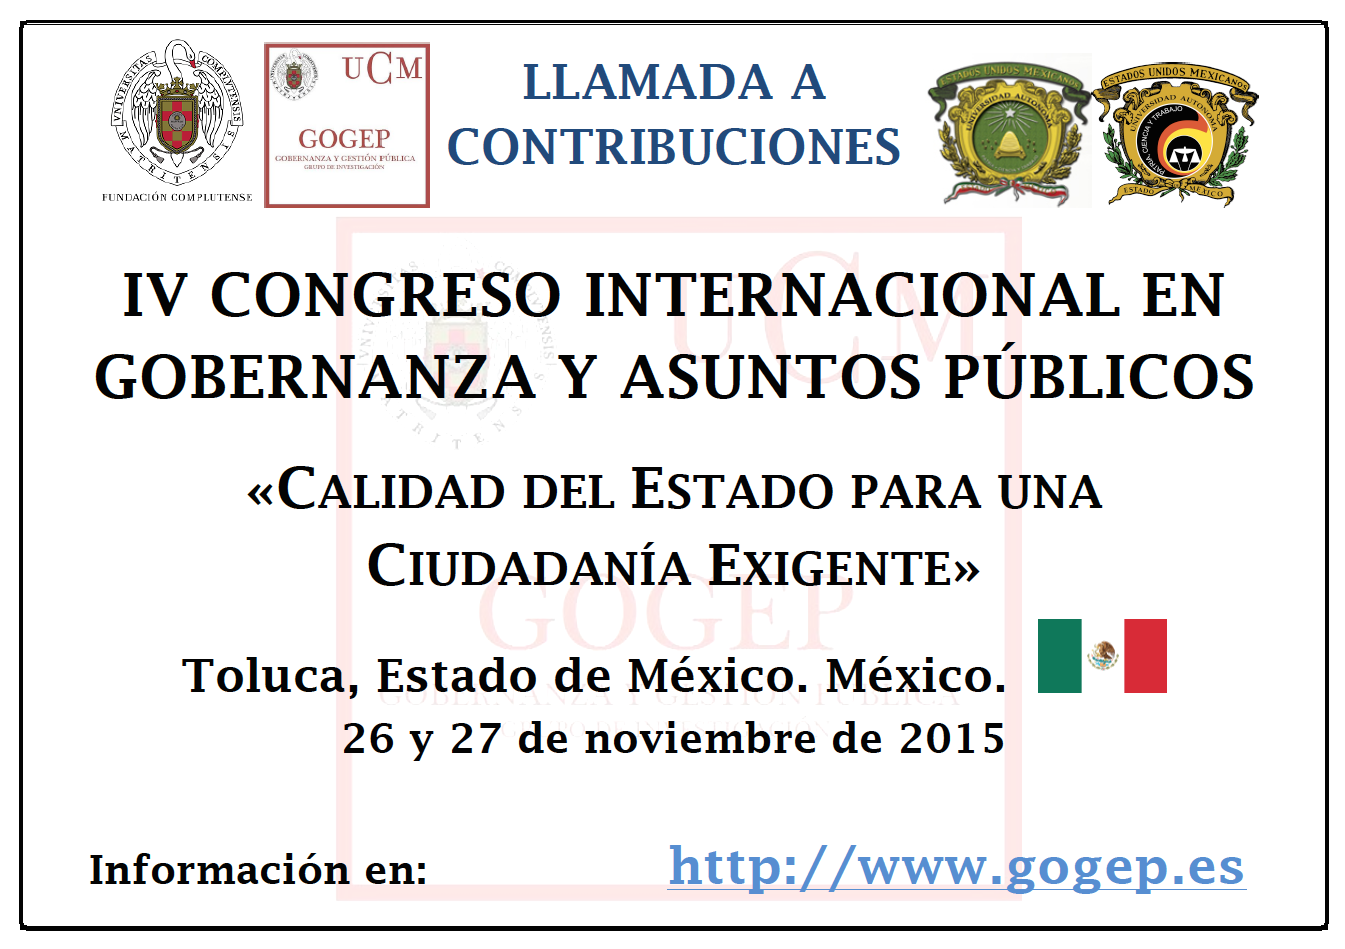 IV Congreso Internacional en Gobernanza y Asuntos Públicos: Calidad del Estado para una Ciudadanía Exigente 